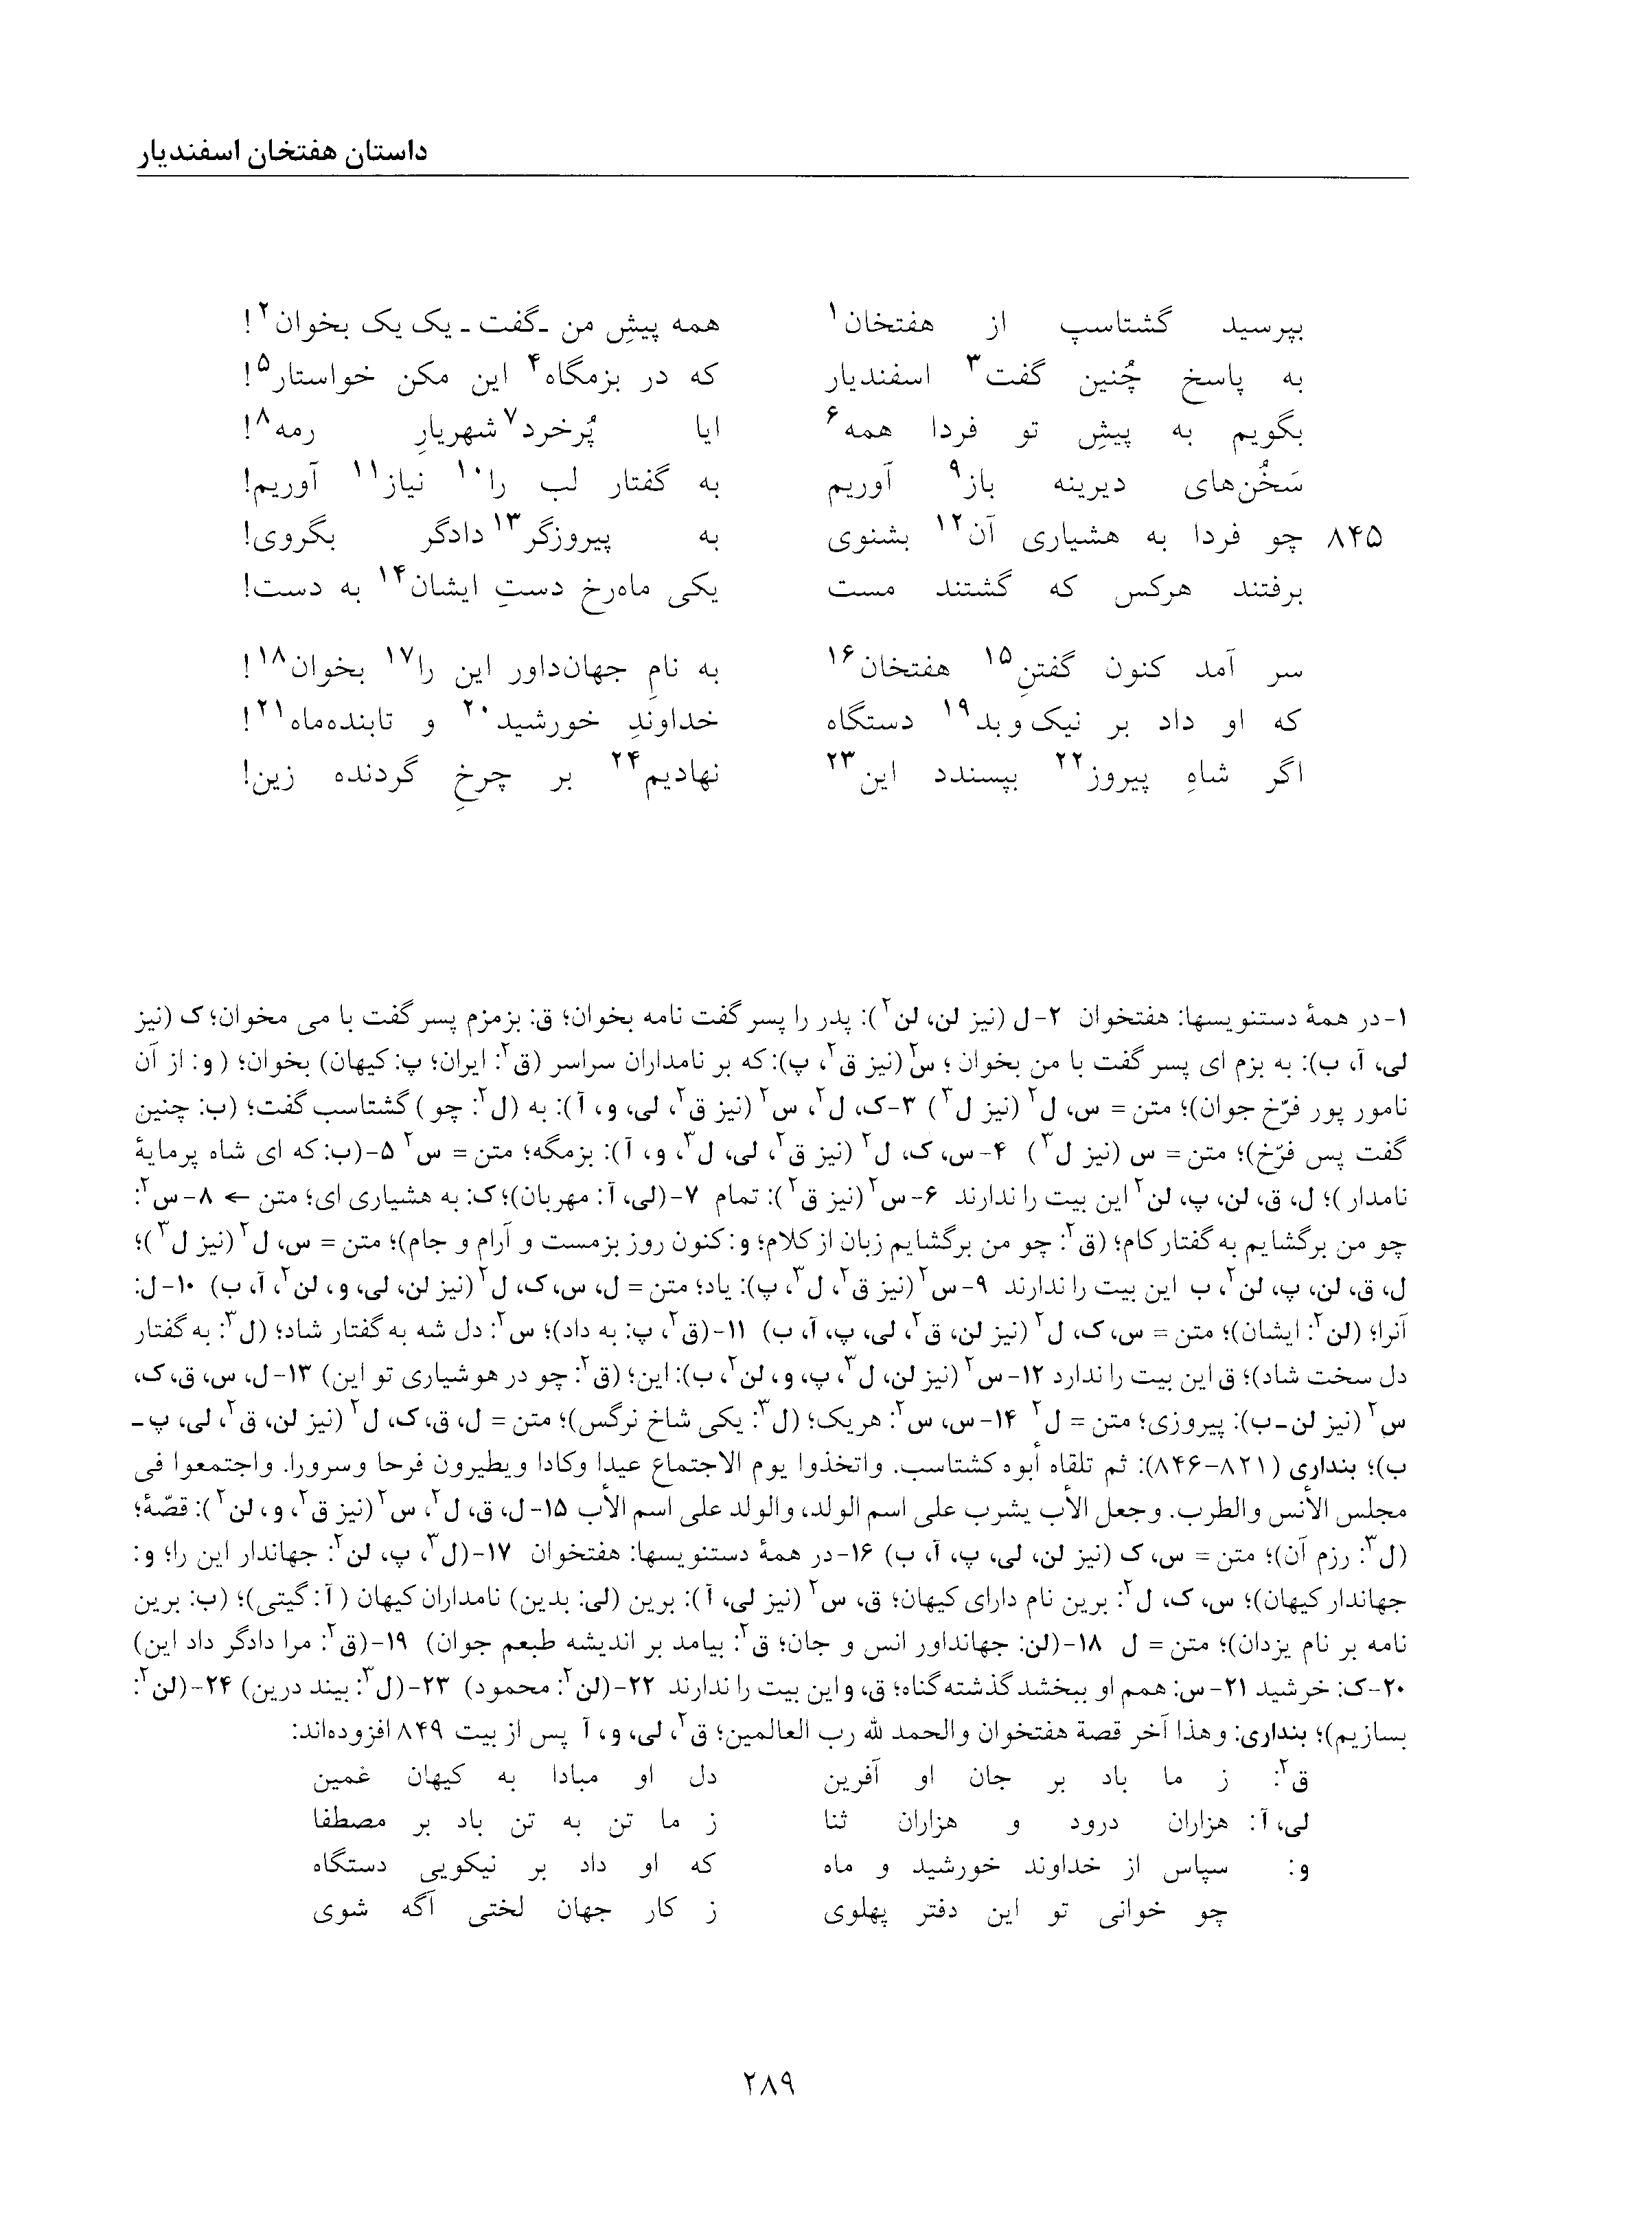 vol. 5, p. 289